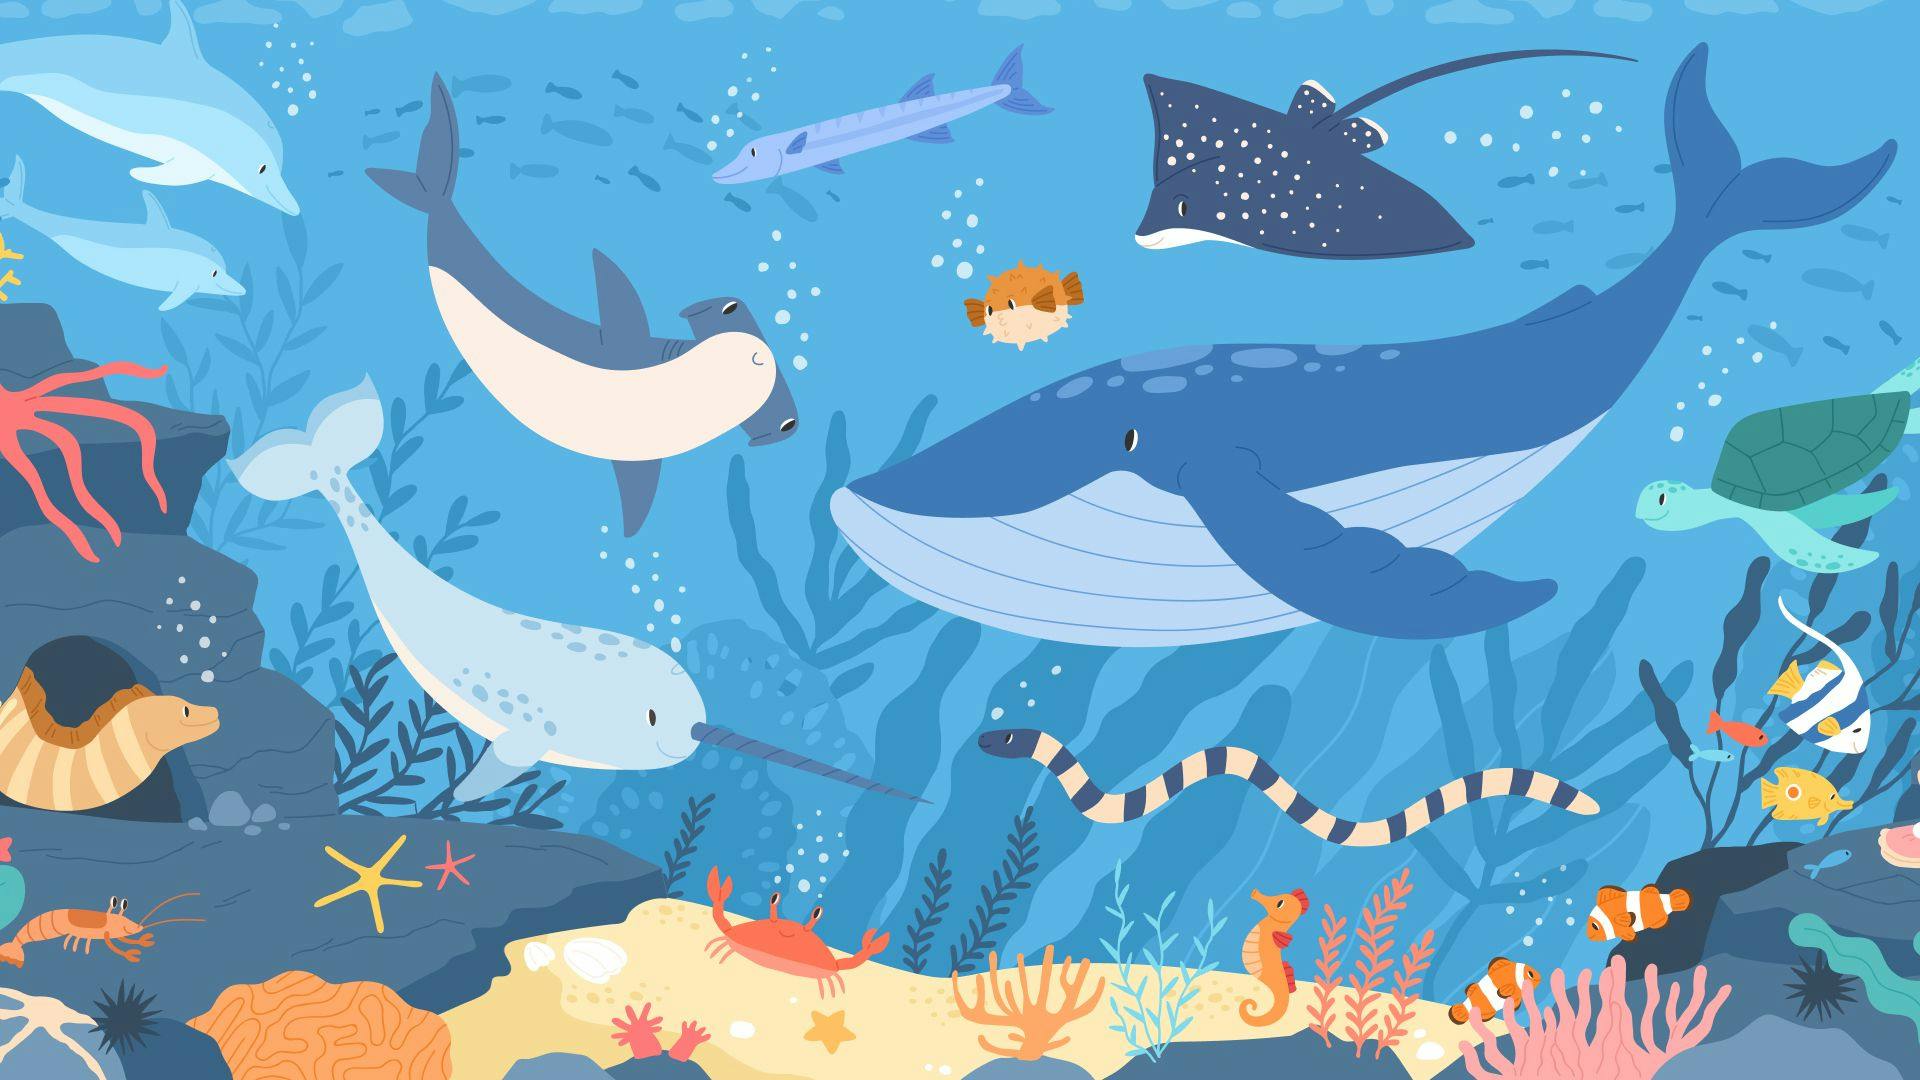 イッカク、クジラ、サメ、フグなど海の生き物達のイラスト